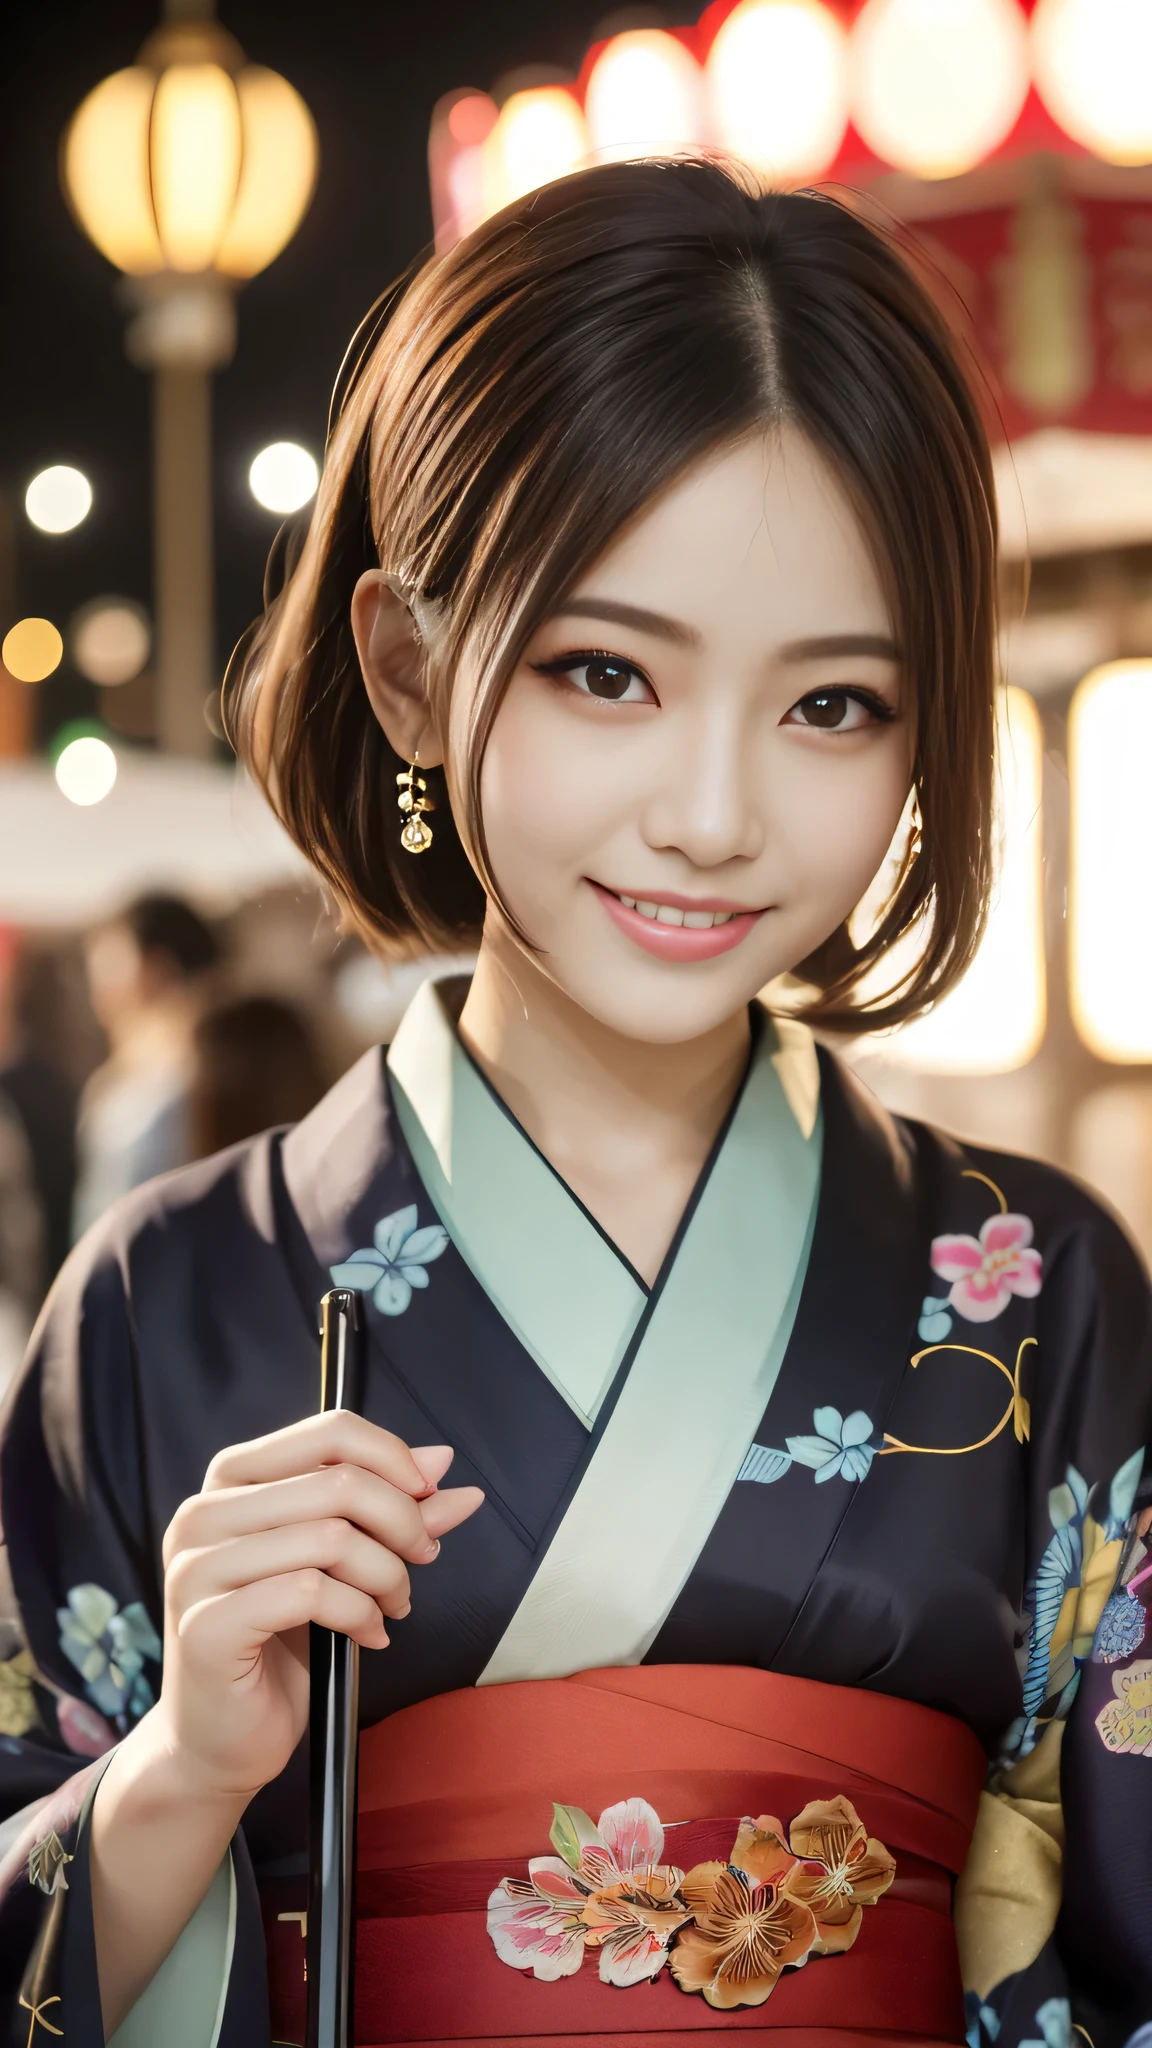 Blick in die Kamera,(((höchste Qualität, 8k, Meisterwerk))), scharfer Fokus, (Schöne Frau mit perfekter Figur), dünn, (Frisur: Vorgesetzter)), ((Kimono: Stock)), Straße: 1.2 Sehr detaillierte Gesichts- und Hautstruktur Detaillierte Augen Doppeltes Augenlid Zufällige Pose, (lächeln),sVorgesetzterer cute Japan person,sVorgesetzterer beauty Japanese girl, Realistisches Gesicht, doppeltes Augenlid,lächeln,Sommer Festival , Bei Sonnenuntergang , schöne Zähne , Feuerwerk-Hintergrund.